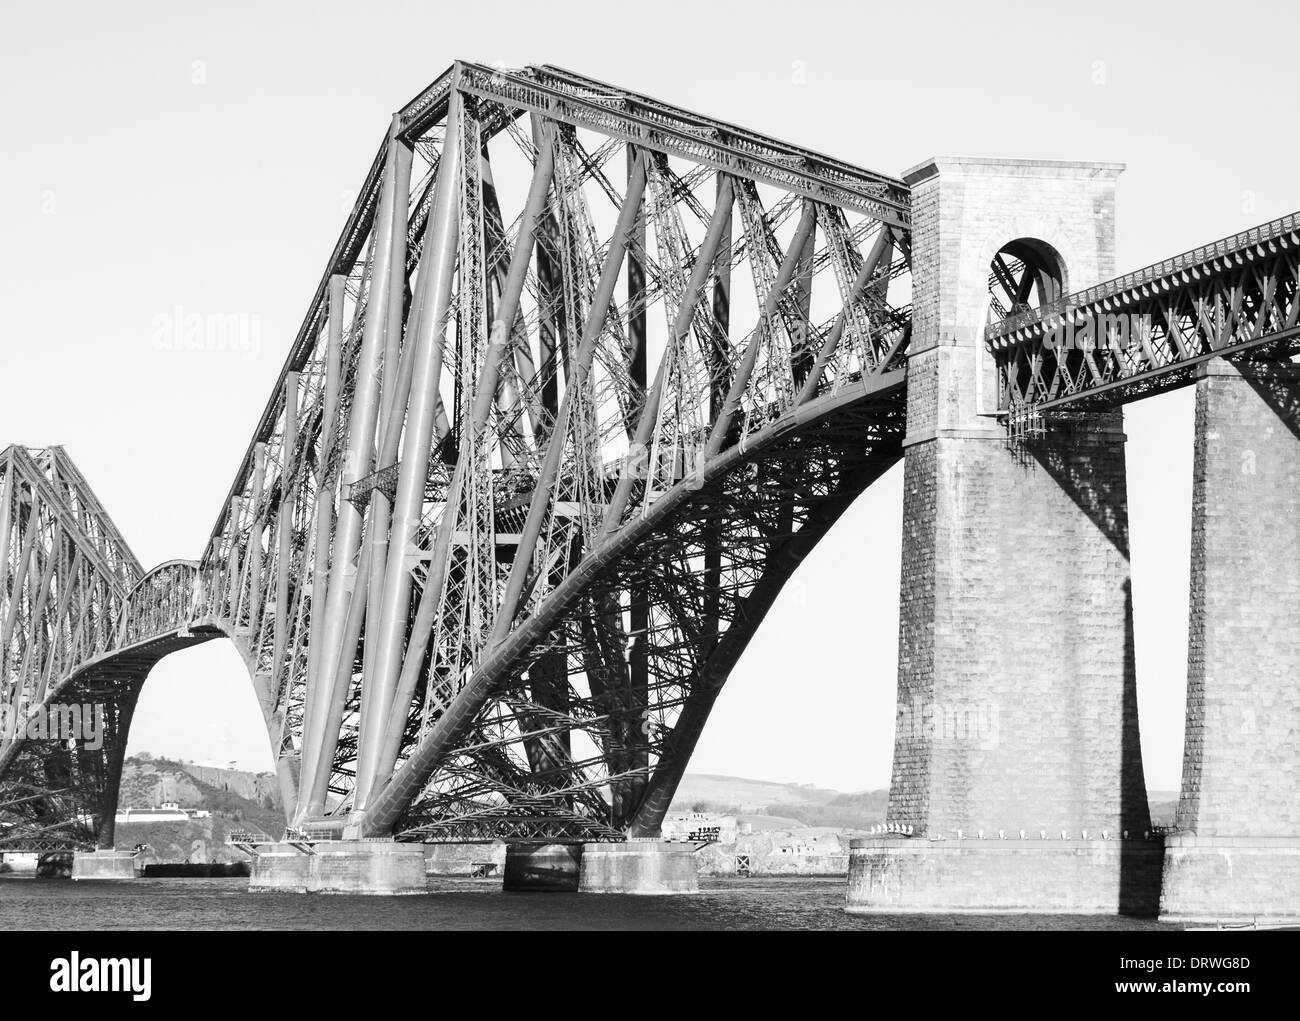 Vierte Schiene Brücke in Edinburgh an einem sonnigen Tag. Schwarz / weiß Foto Stockfoto